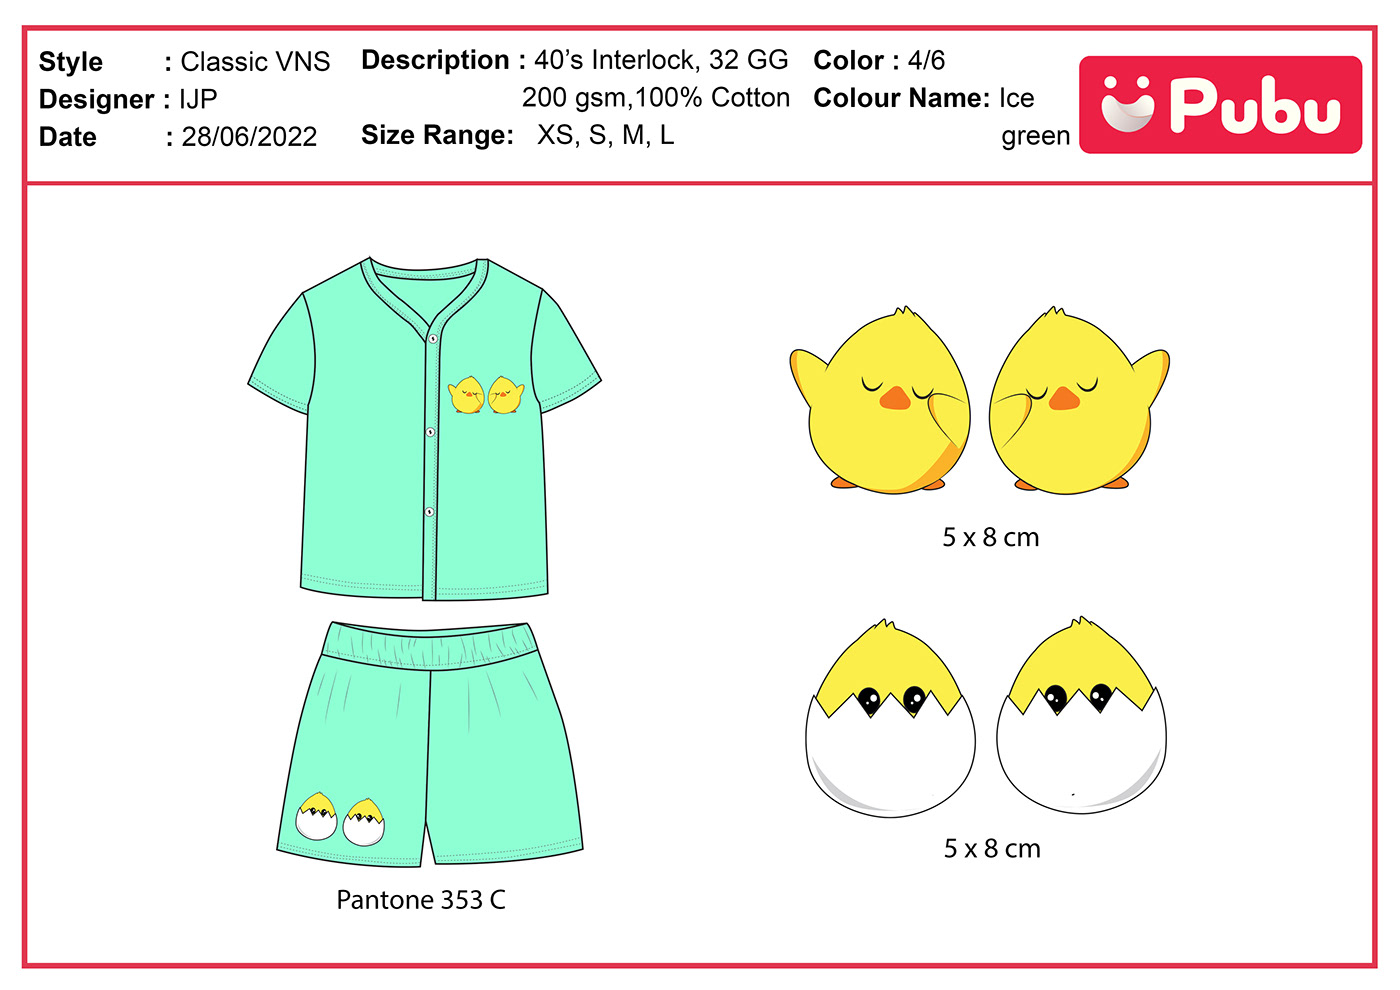 Infantwear kidswear babywear Fashion  Clothing fashion design ILLUSTRATION  vector adobe illustrator apparels